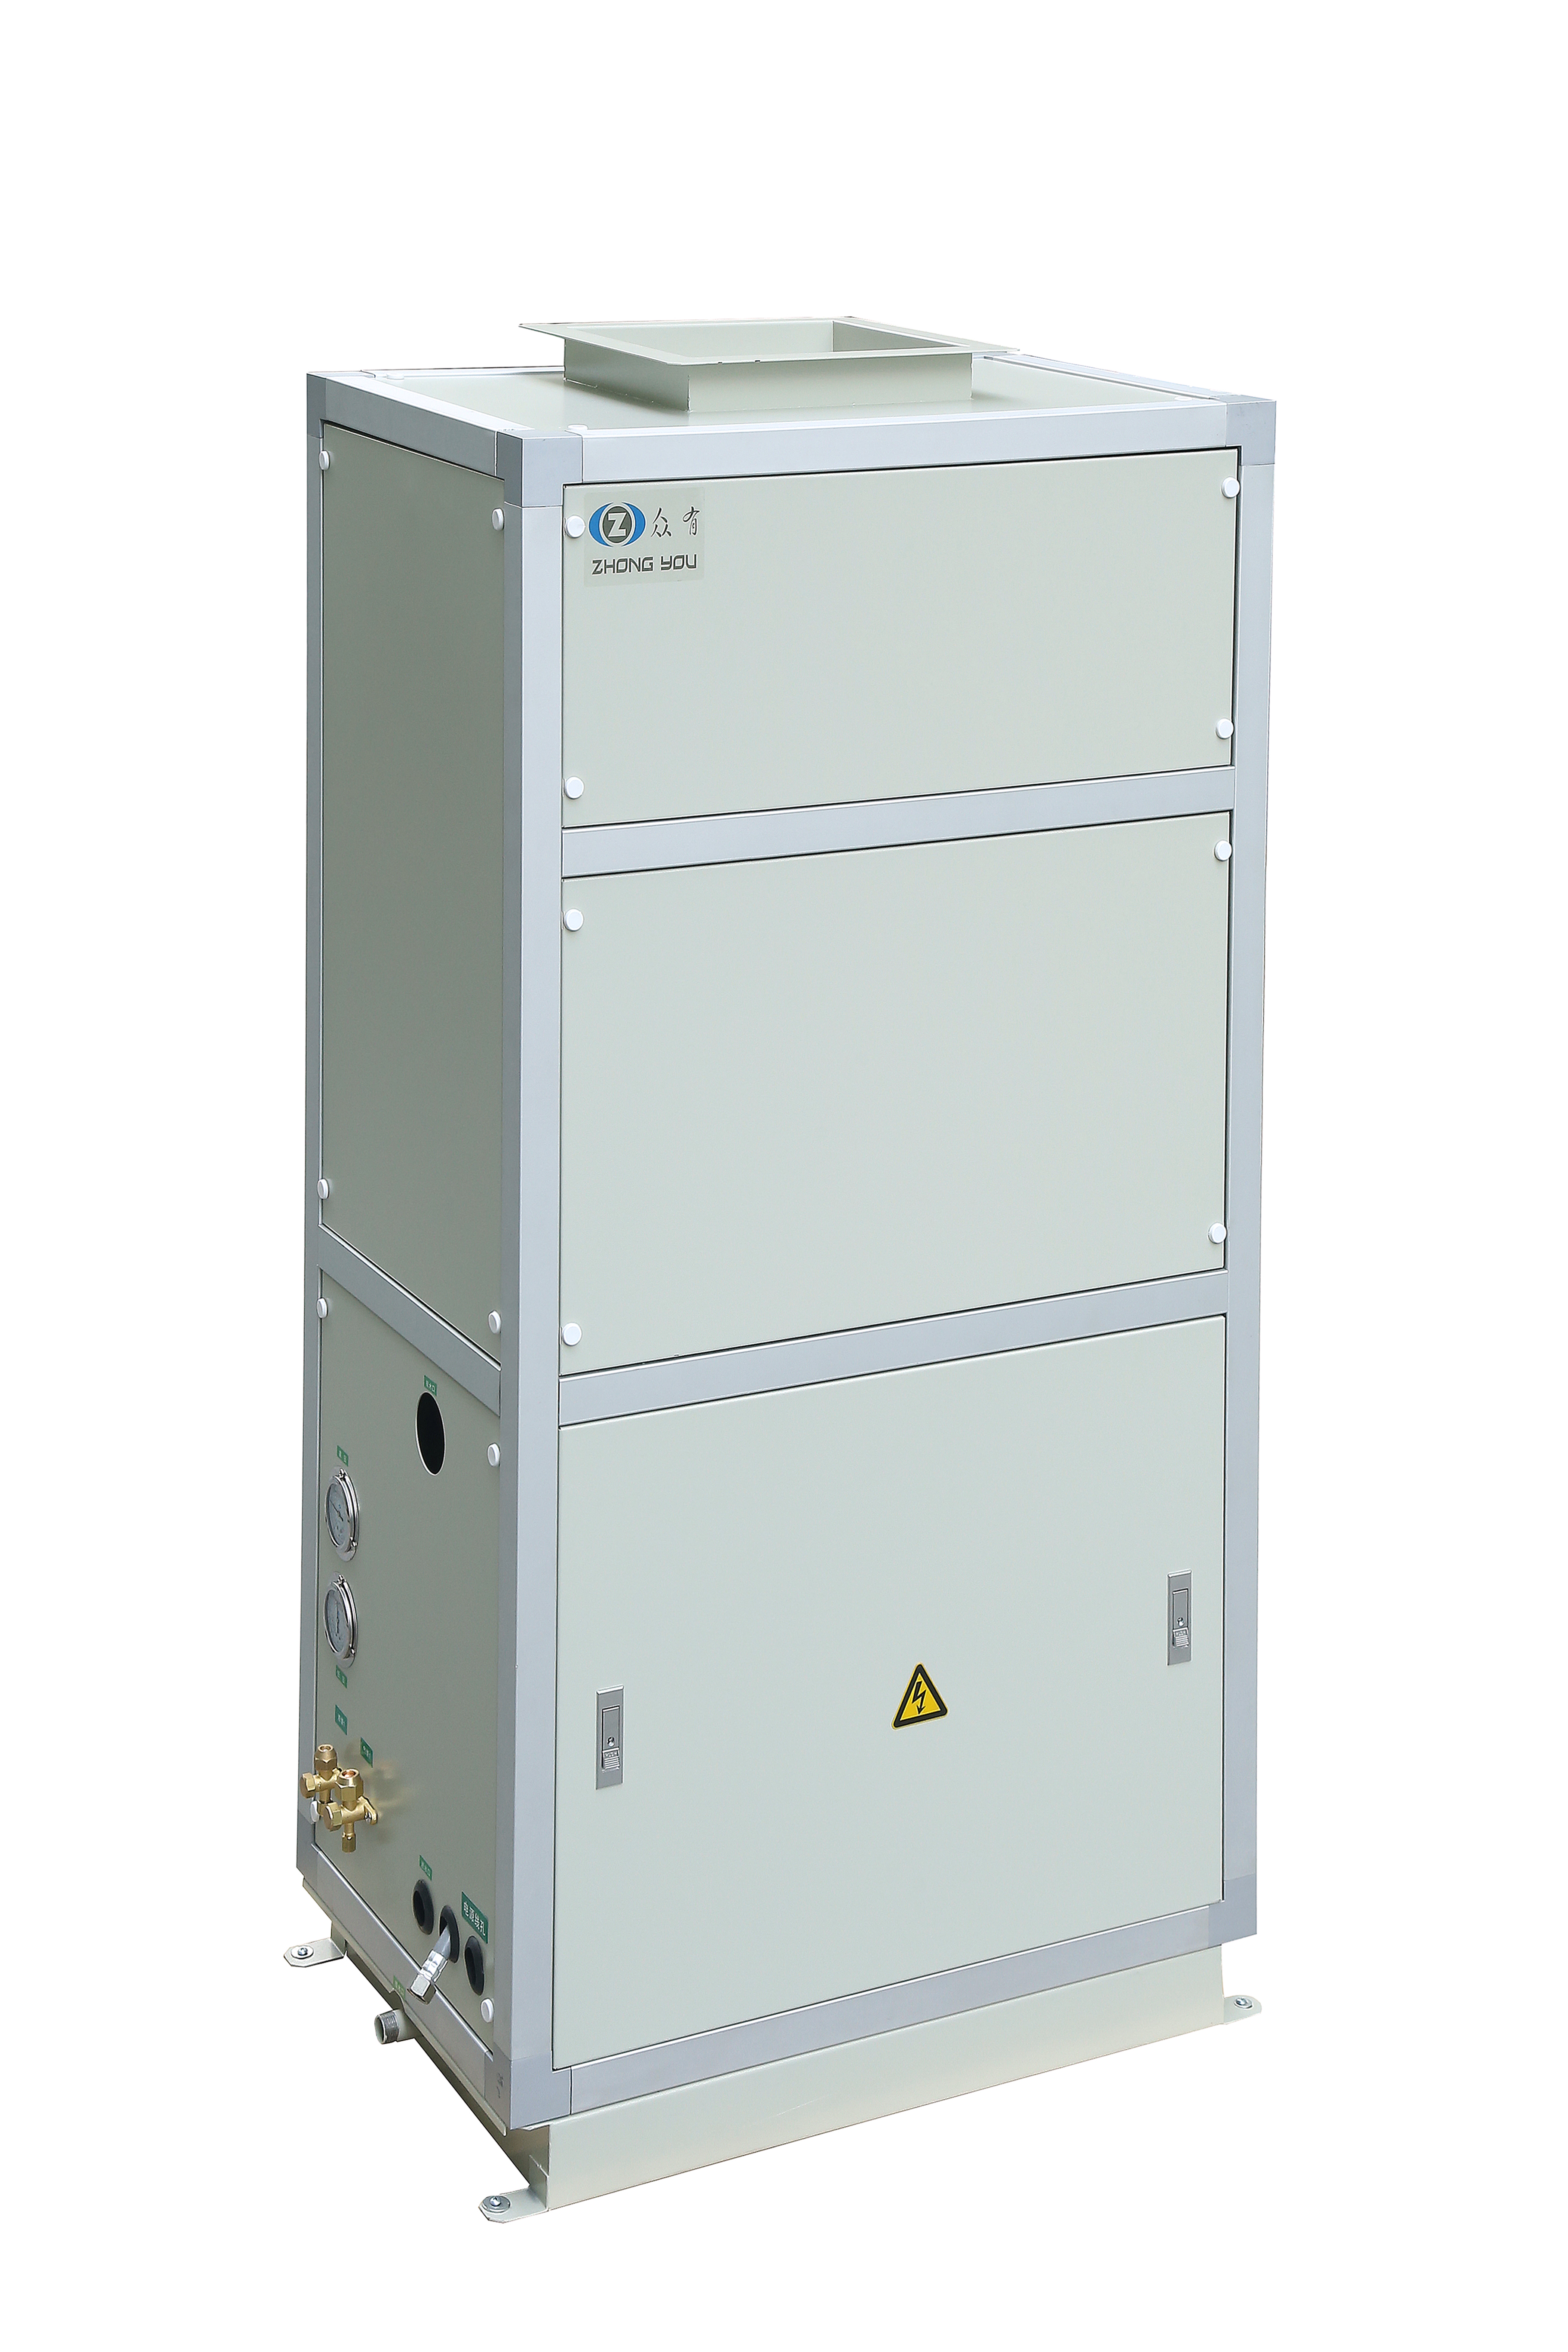 医用空调机 JLFD205N风冷净化型单冷柜式空调机组 风冷恒温恒湿机